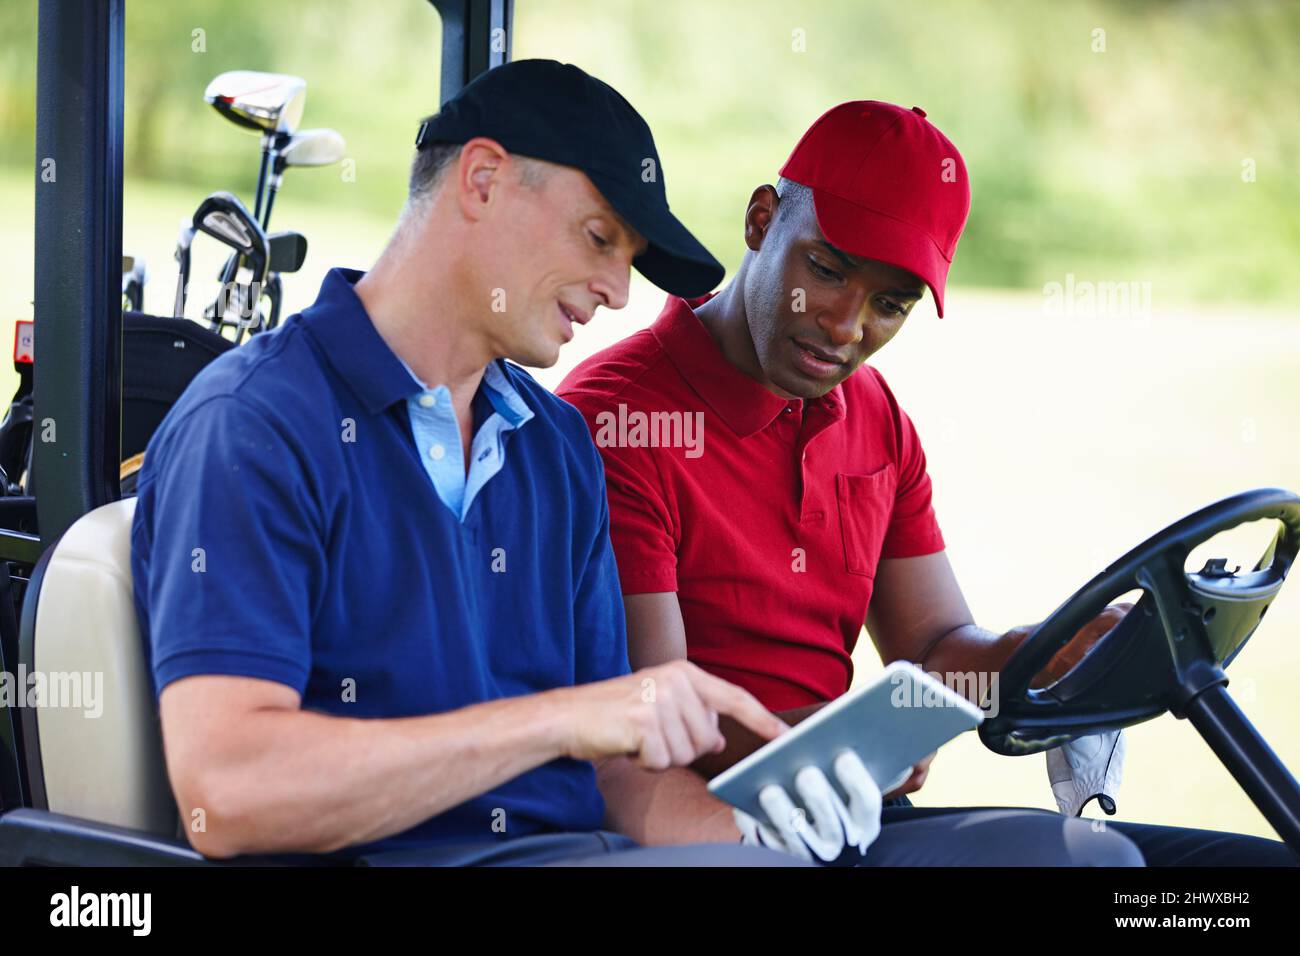 Ottenere i migliori consigli di golf online. Scatto di due uomini in un golf cart guardando un tablet digitale. Foto Stock